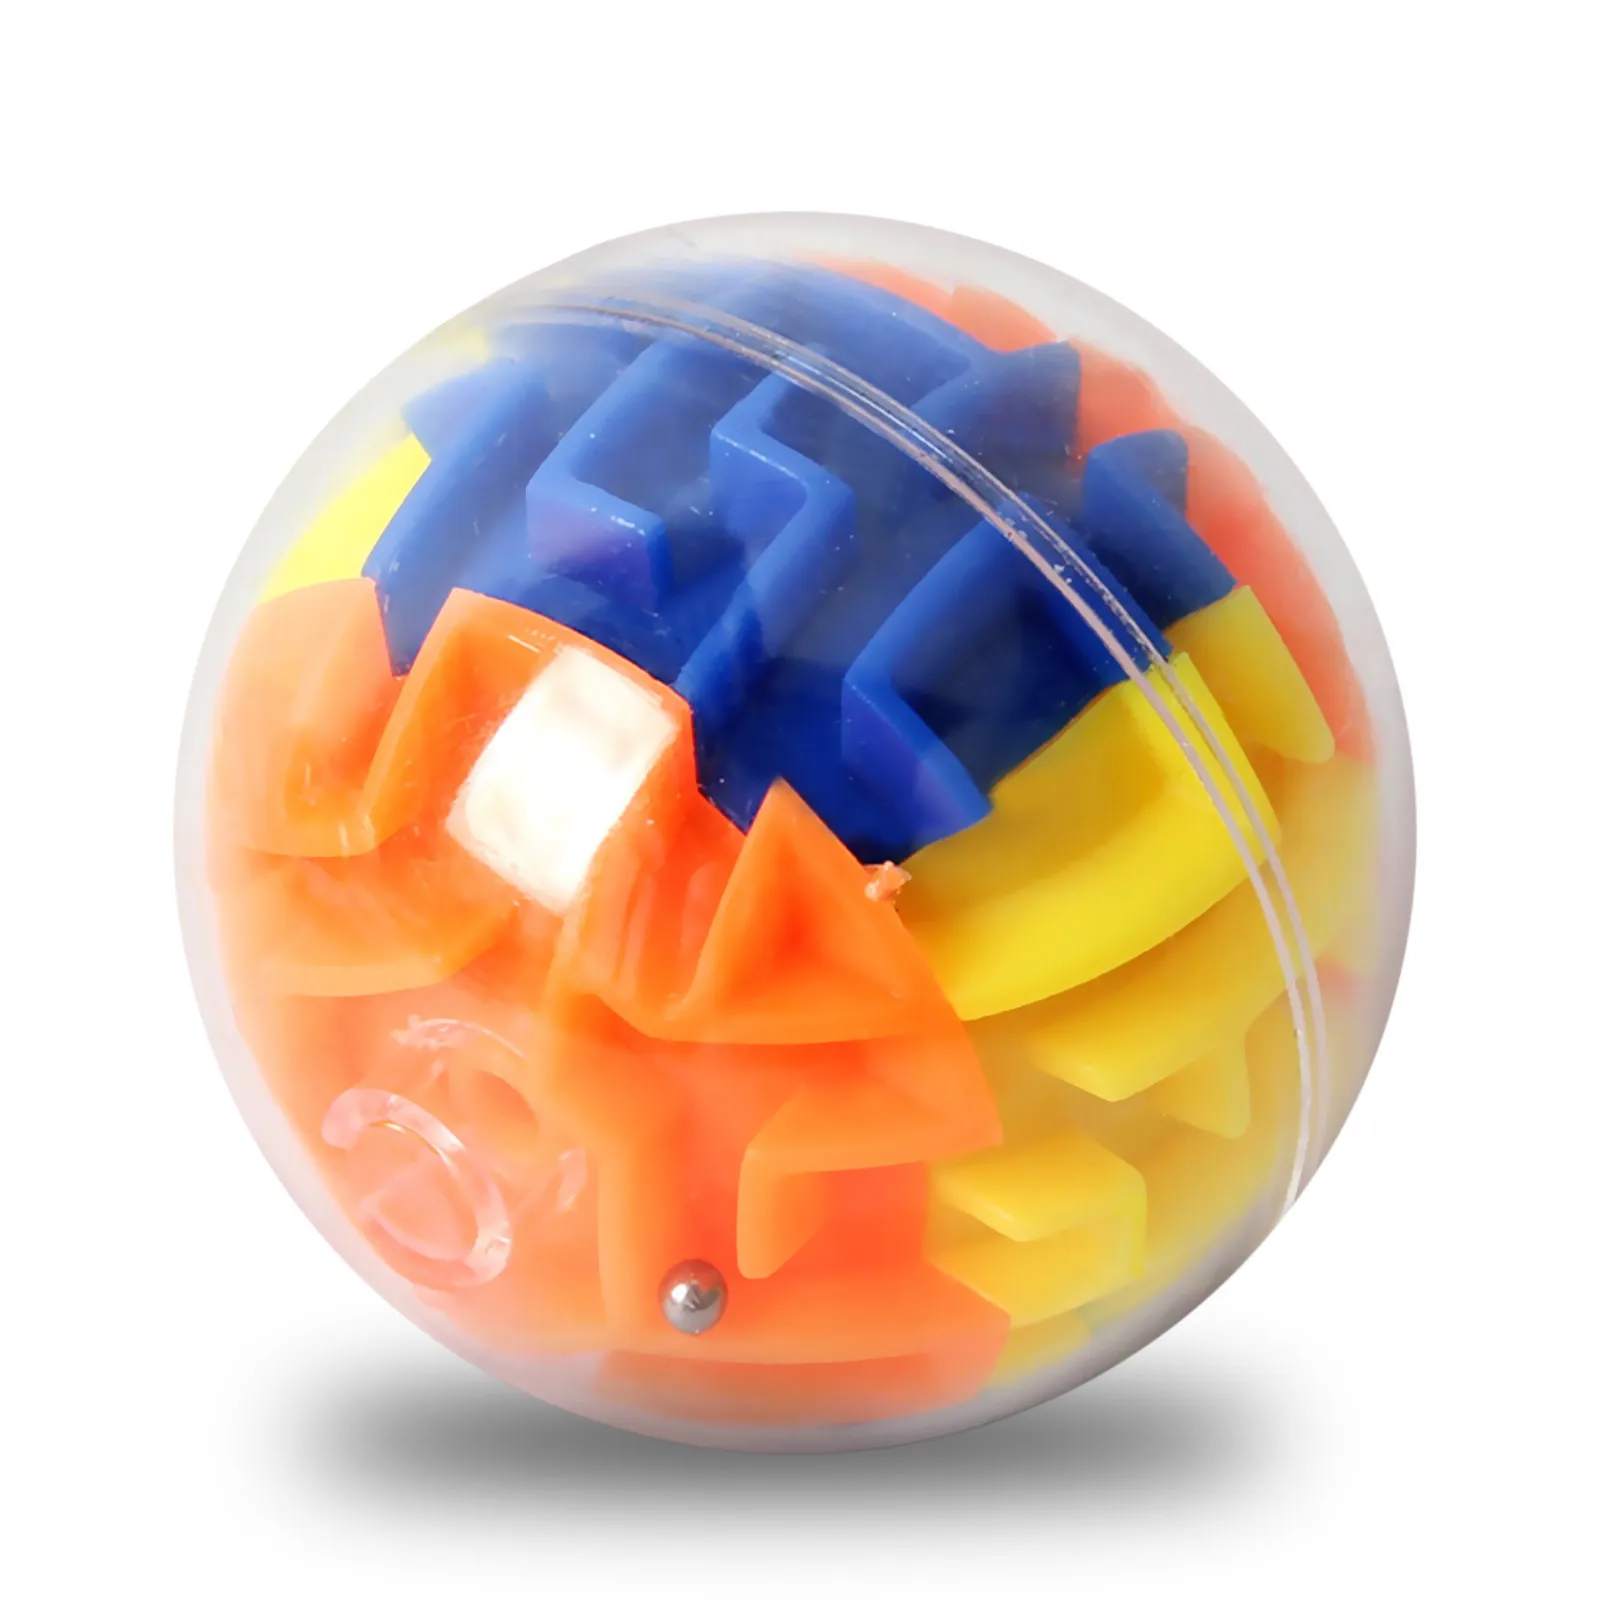 Tanie 3D Puzzle Balls interaktywna gra w labirynt z 30 trudnymi